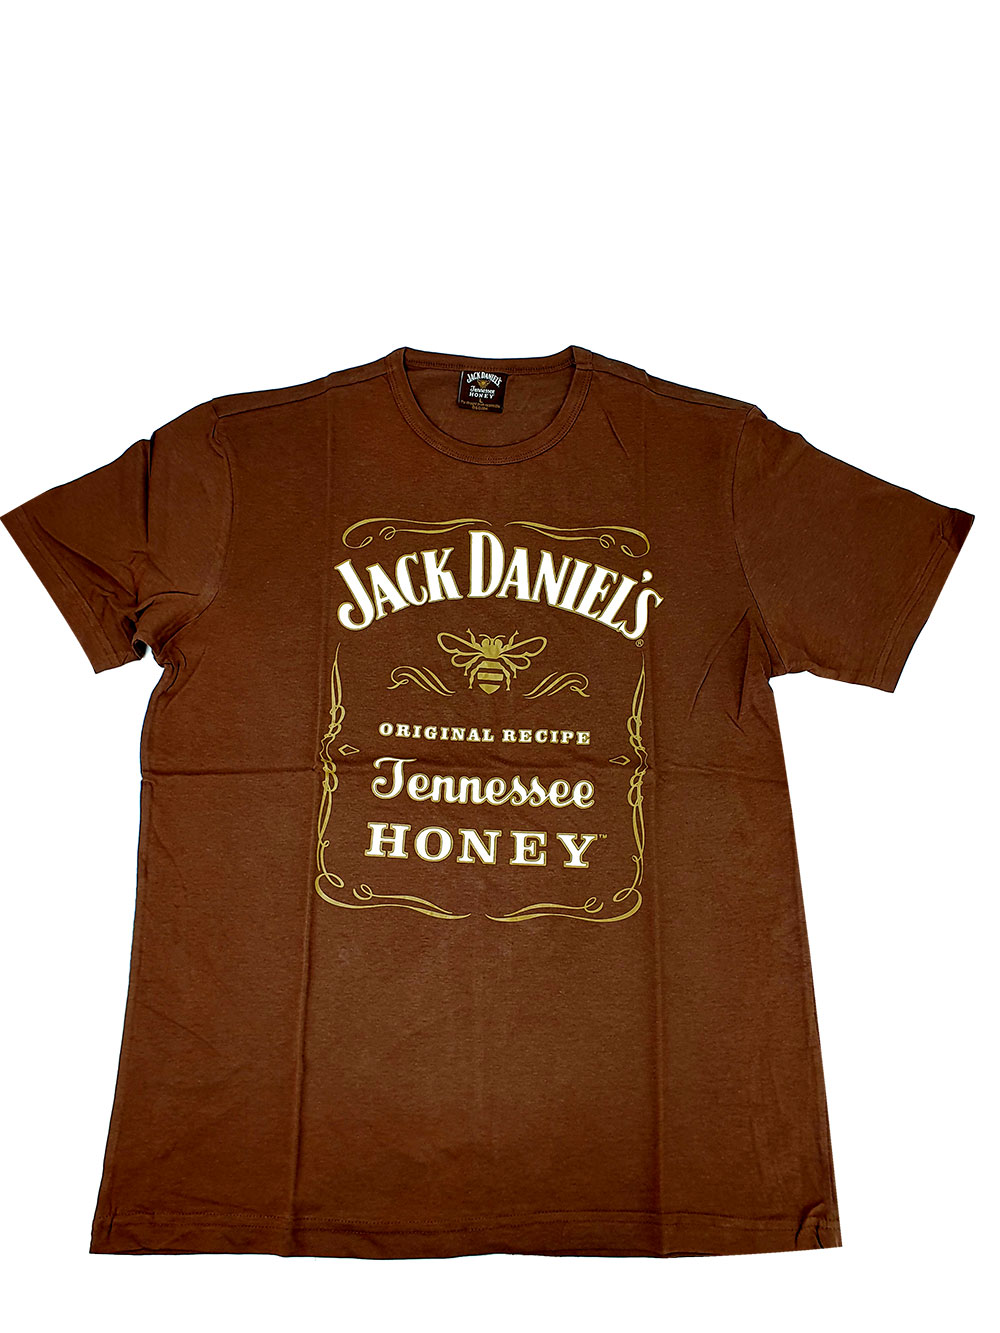 Jack Daniels Honey T-Shirt / Herren in Größe L / Baumwolle in braun